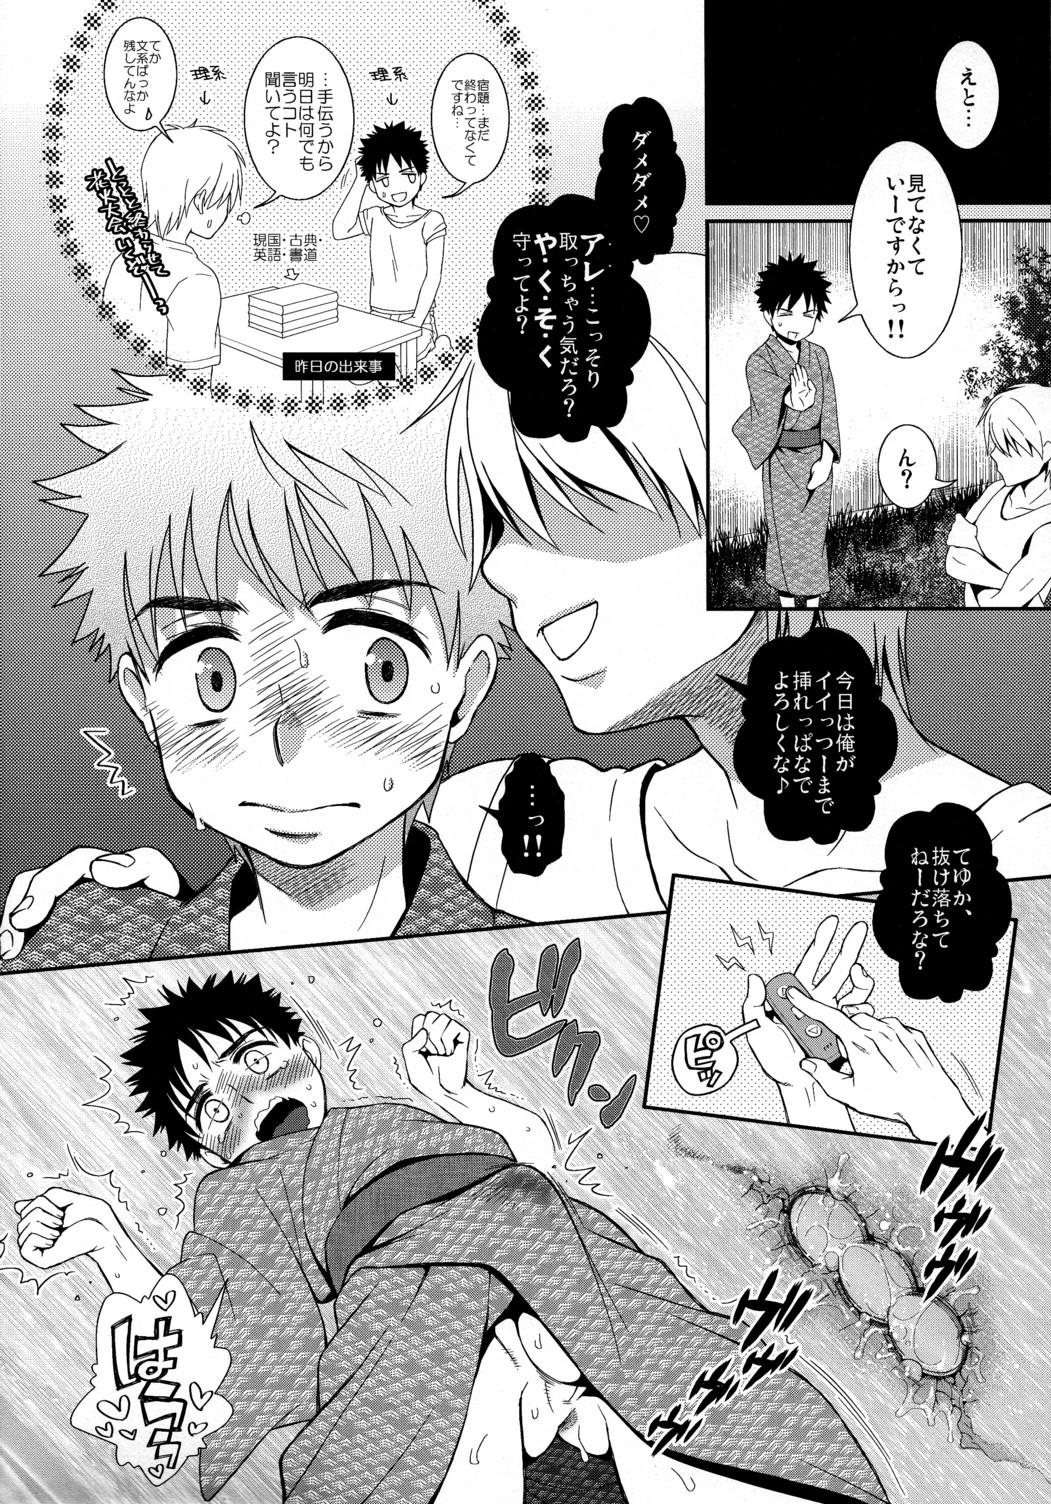 Smoking Super Freak Takuya-kun! 3 - Ookiku furikabutte Lesbo - Page 6